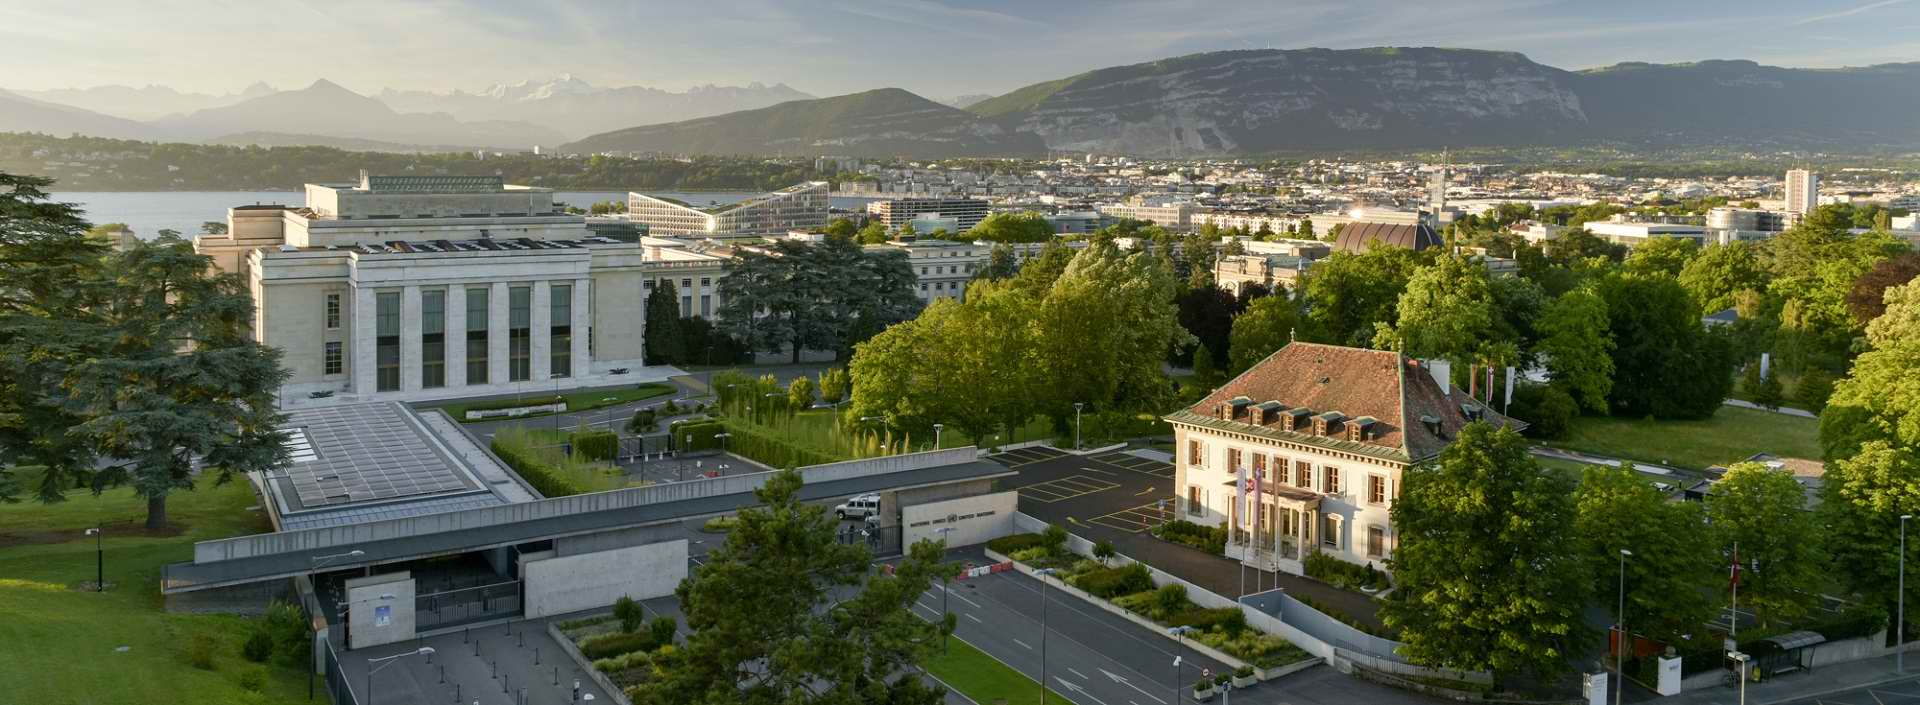 Getting to the hotel school of Geneva - Ecole Hôtelière Genève - Direction to Ecole Hôtelière Genève